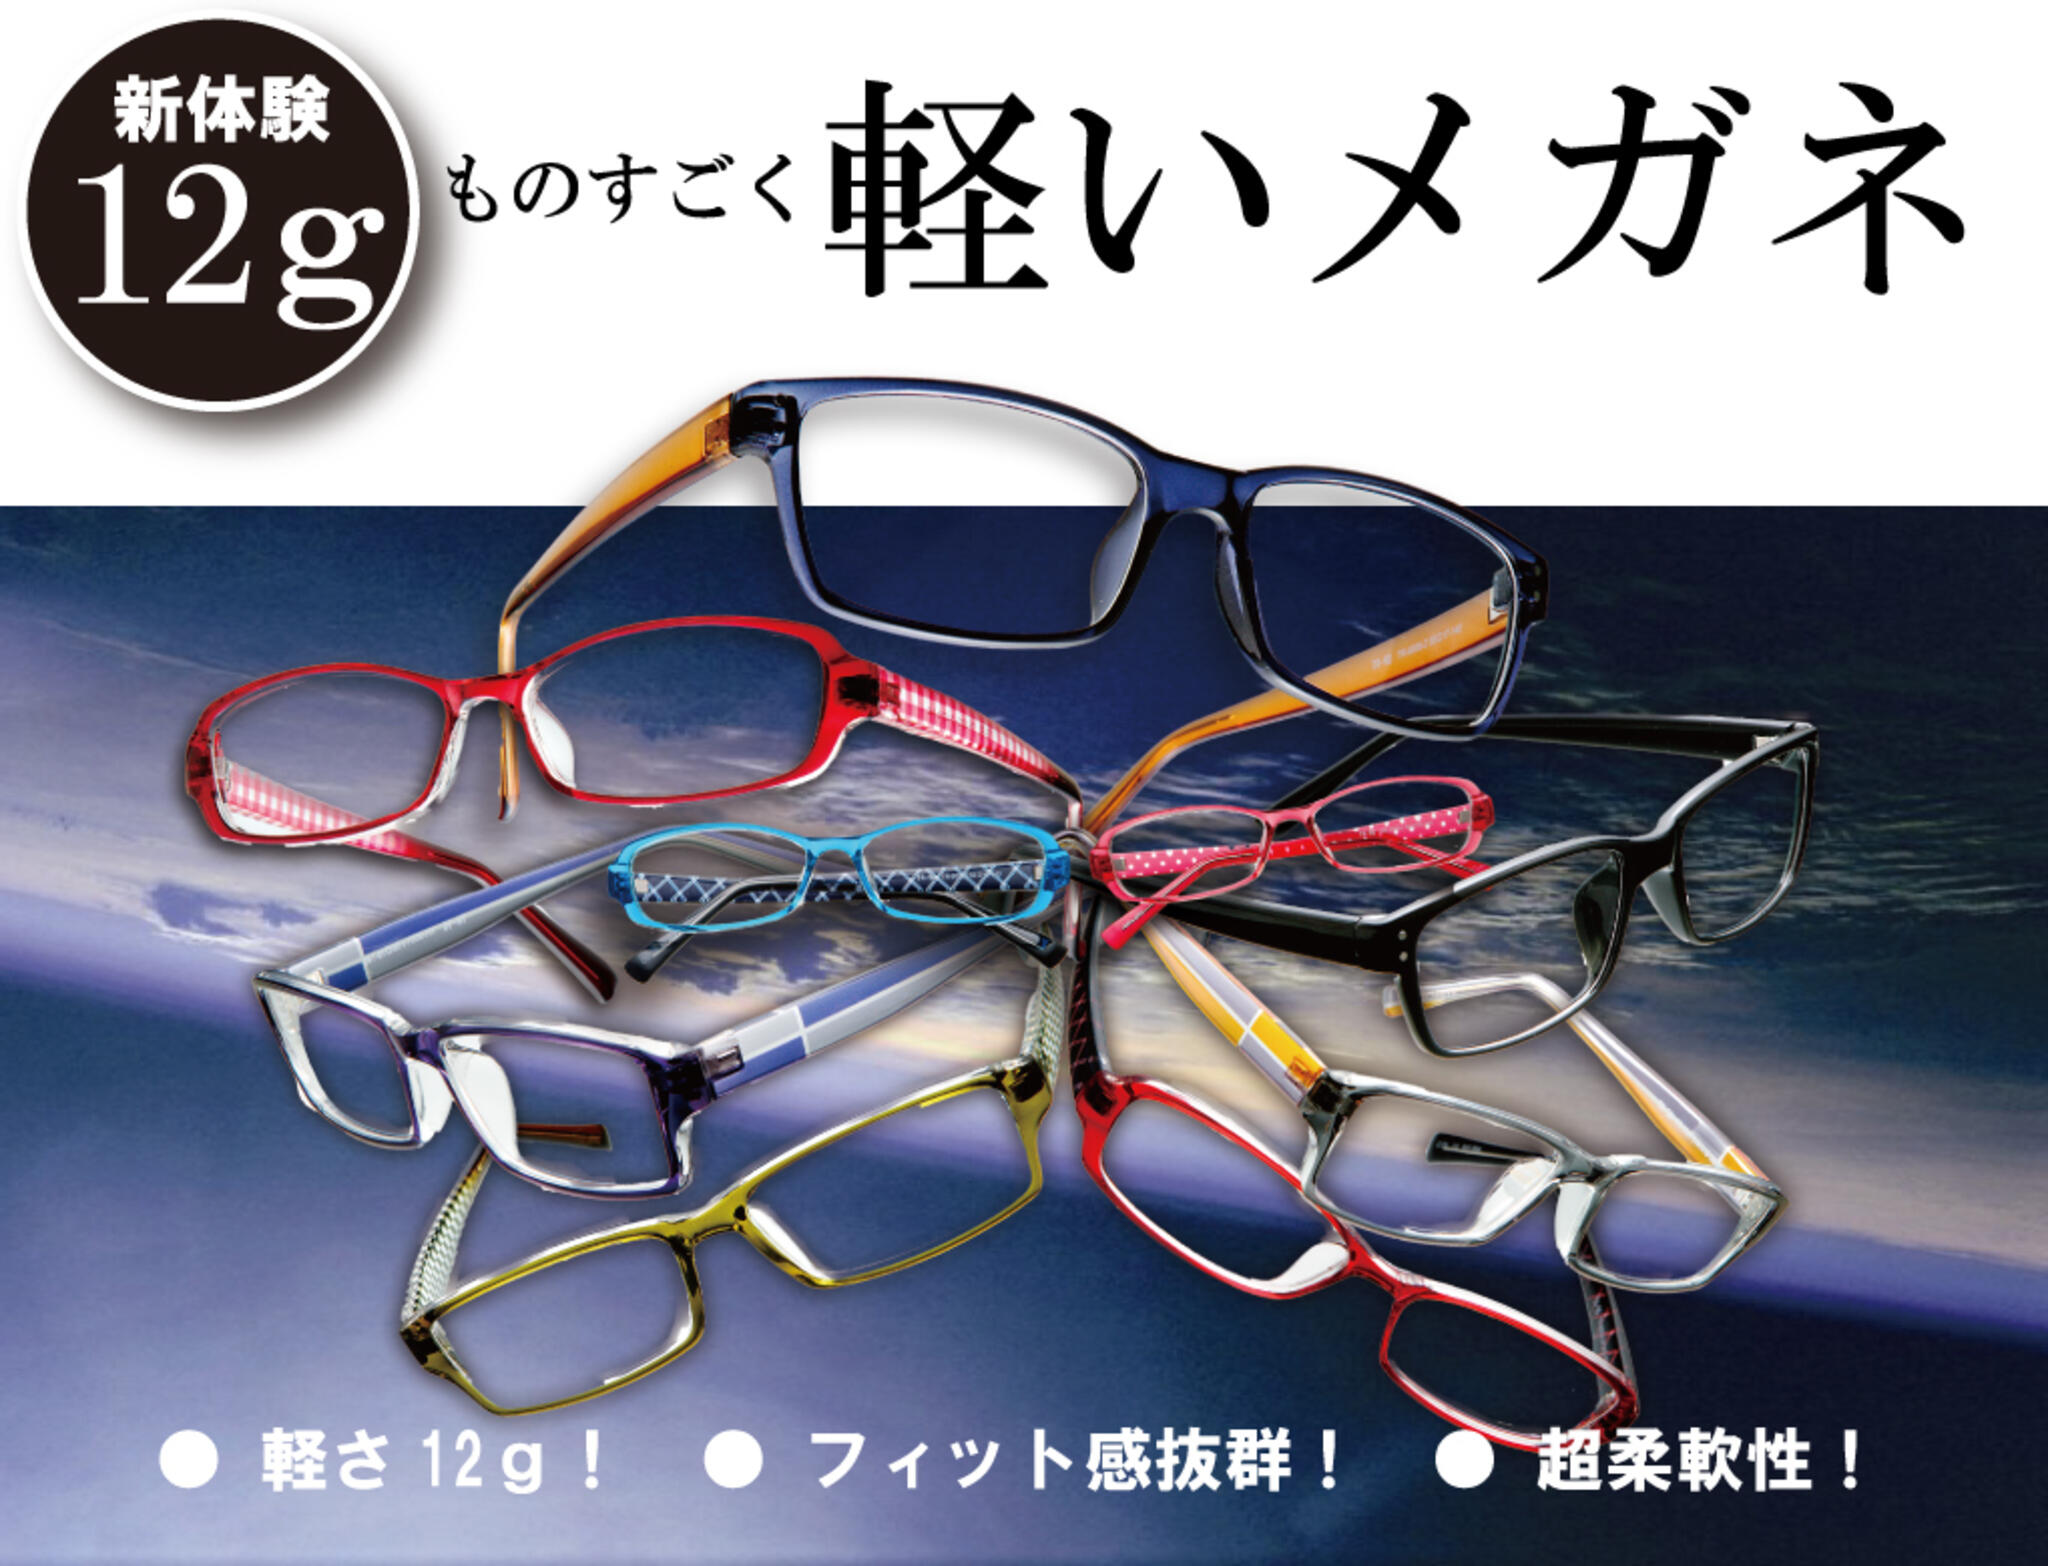 ドクターアイズ江別店からのお知らせ(軽い！メガネはこれがおすすめ！｜新体験の12ｇの真空フレーム )に関する写真